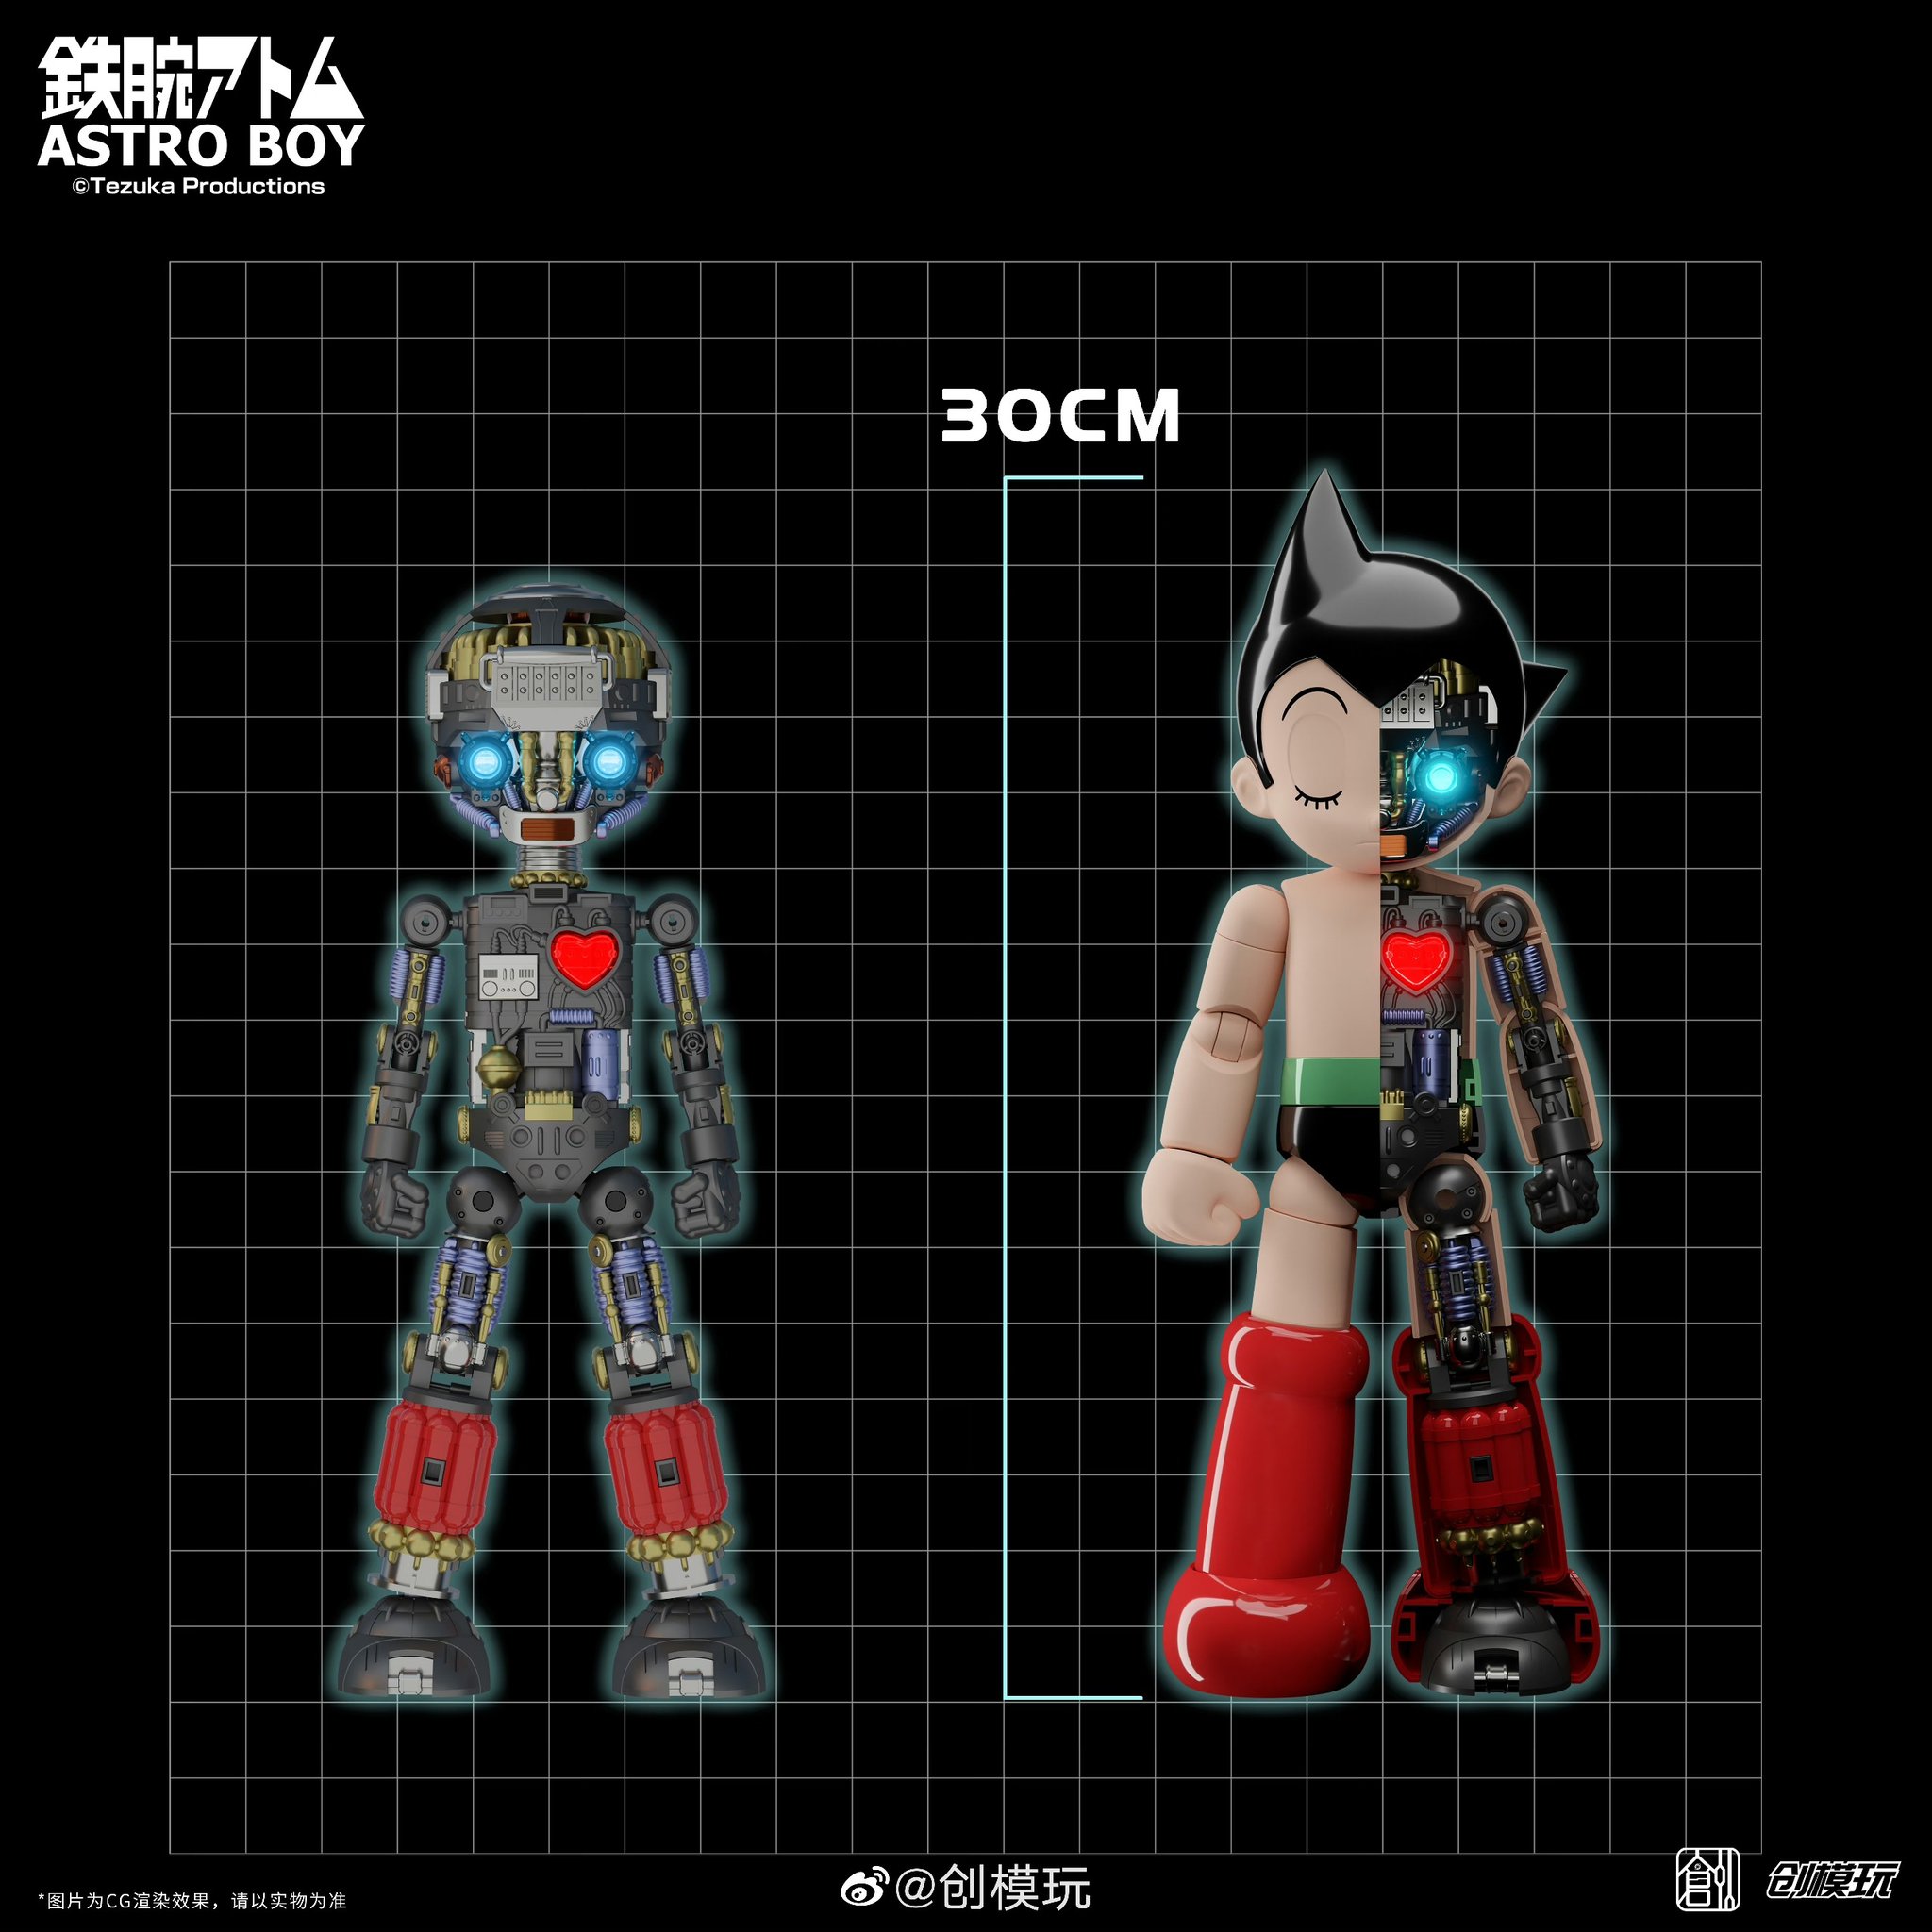 TRON Astro Boy / Tetsuwan Atom 30cm 1118